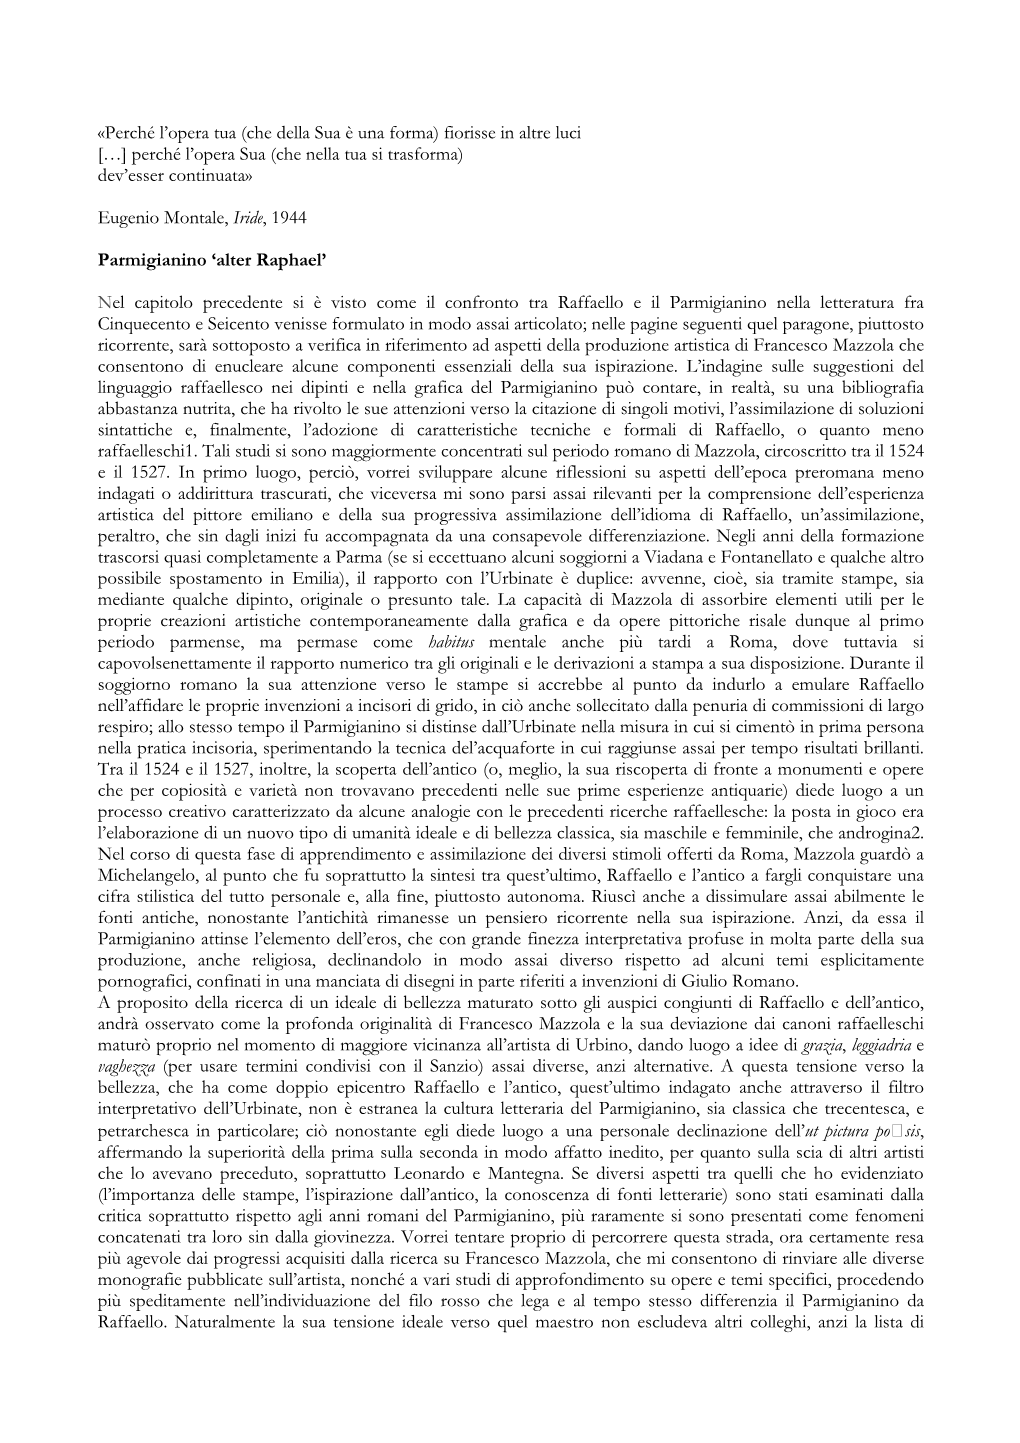 11. Parmigianino 'Alter Raphael'